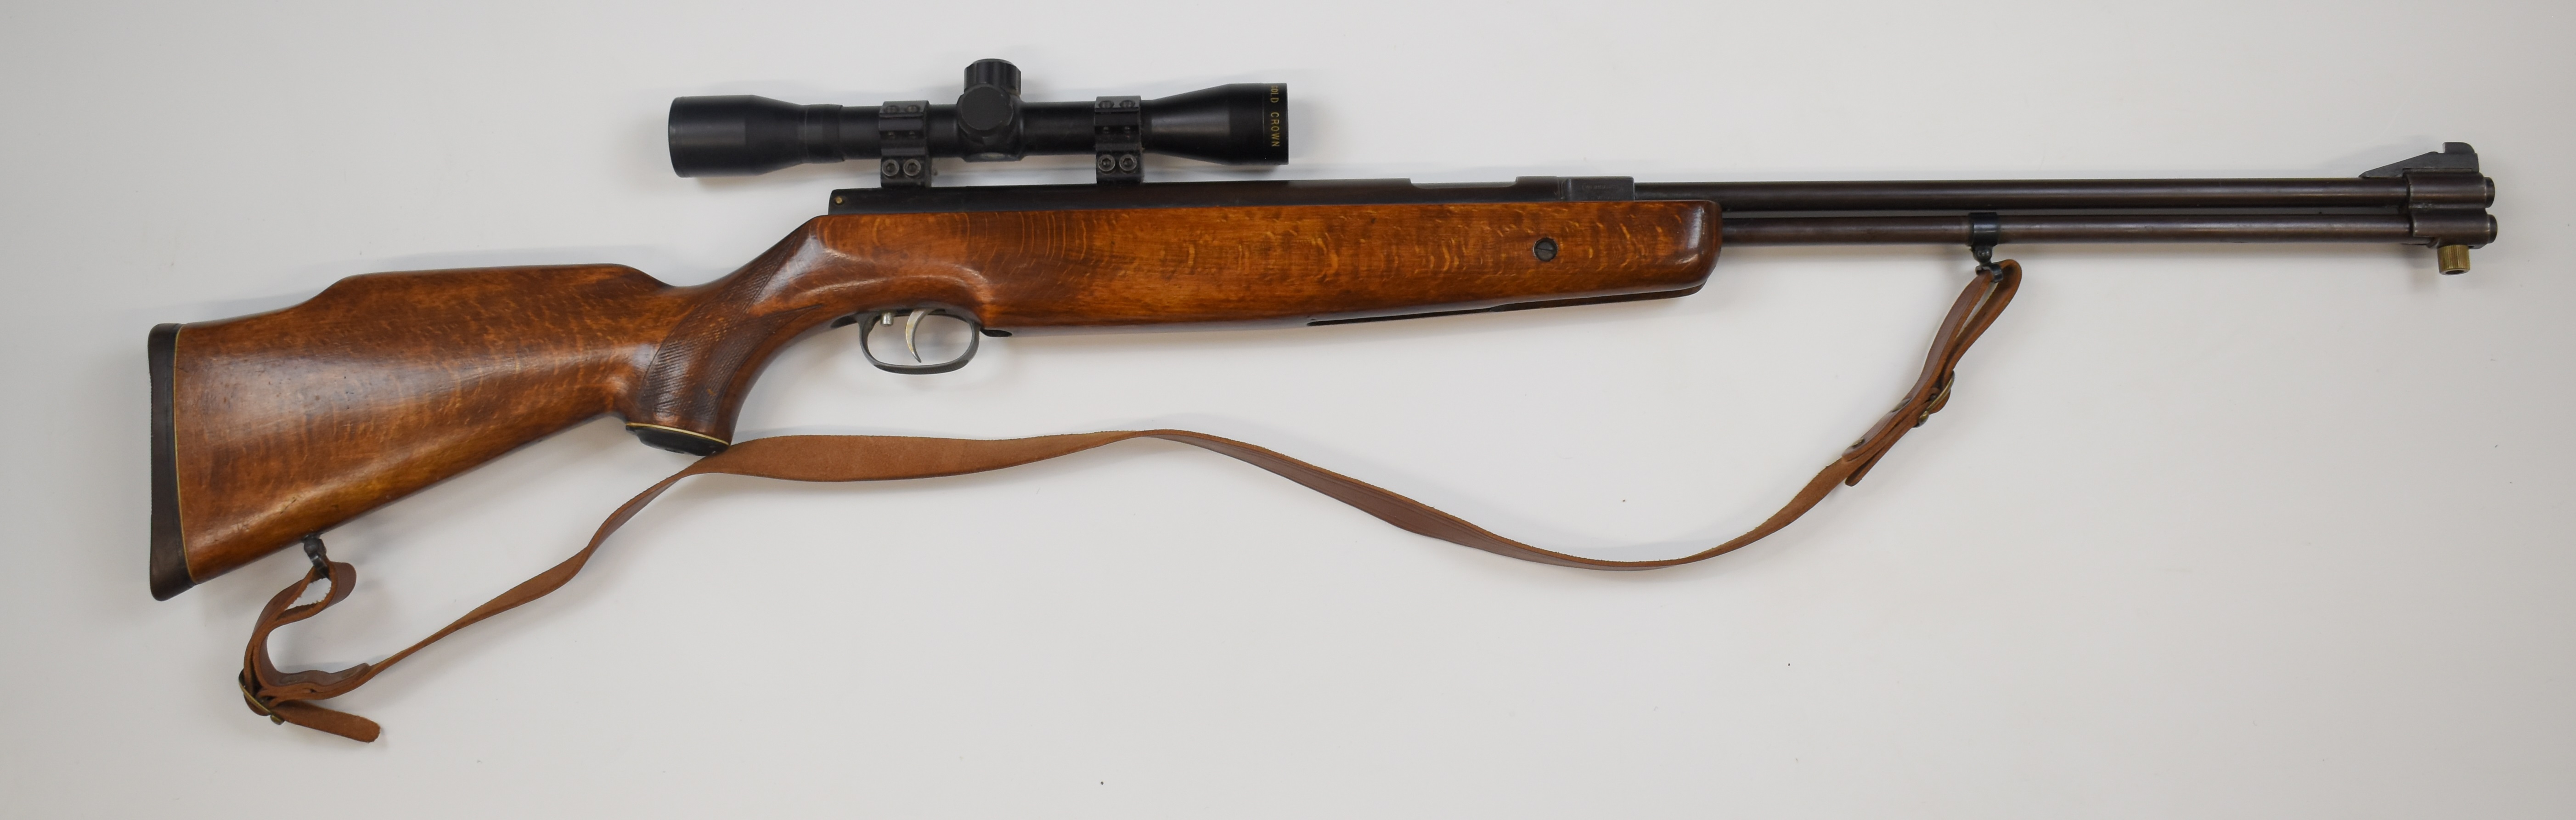 Weirauch HW77 .22 underlever air rifle with chequered semi-pistol grip, raised cheek piece, - Image 2 of 9